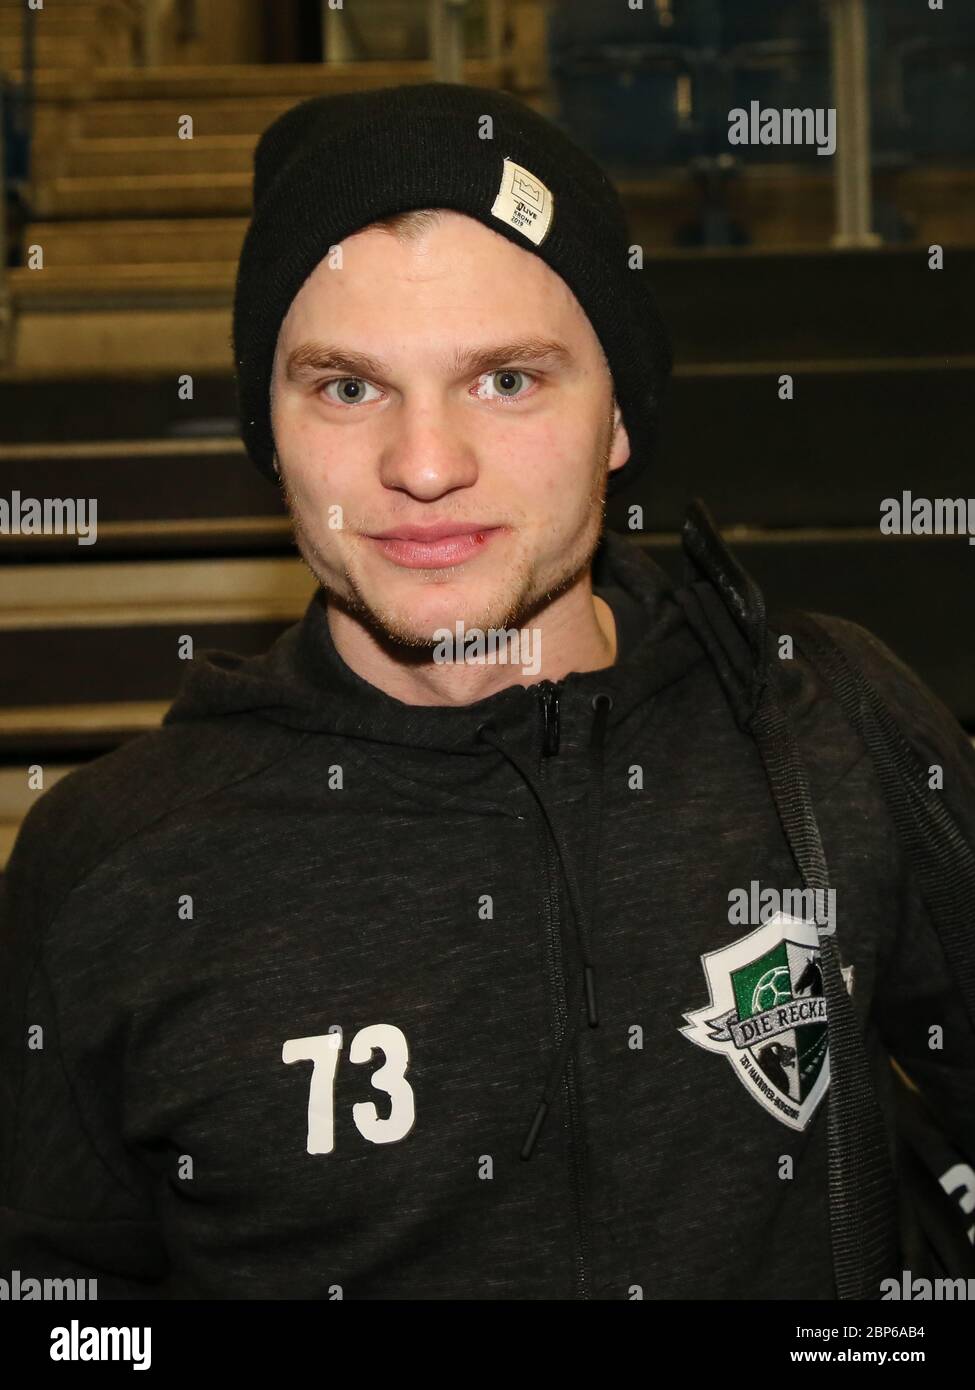 El jugador alemán de balonmano Timo Kastening, TSV Hannover-Burgdorf Liqui Moly HBL, temporada 2019-20 Foto de stock